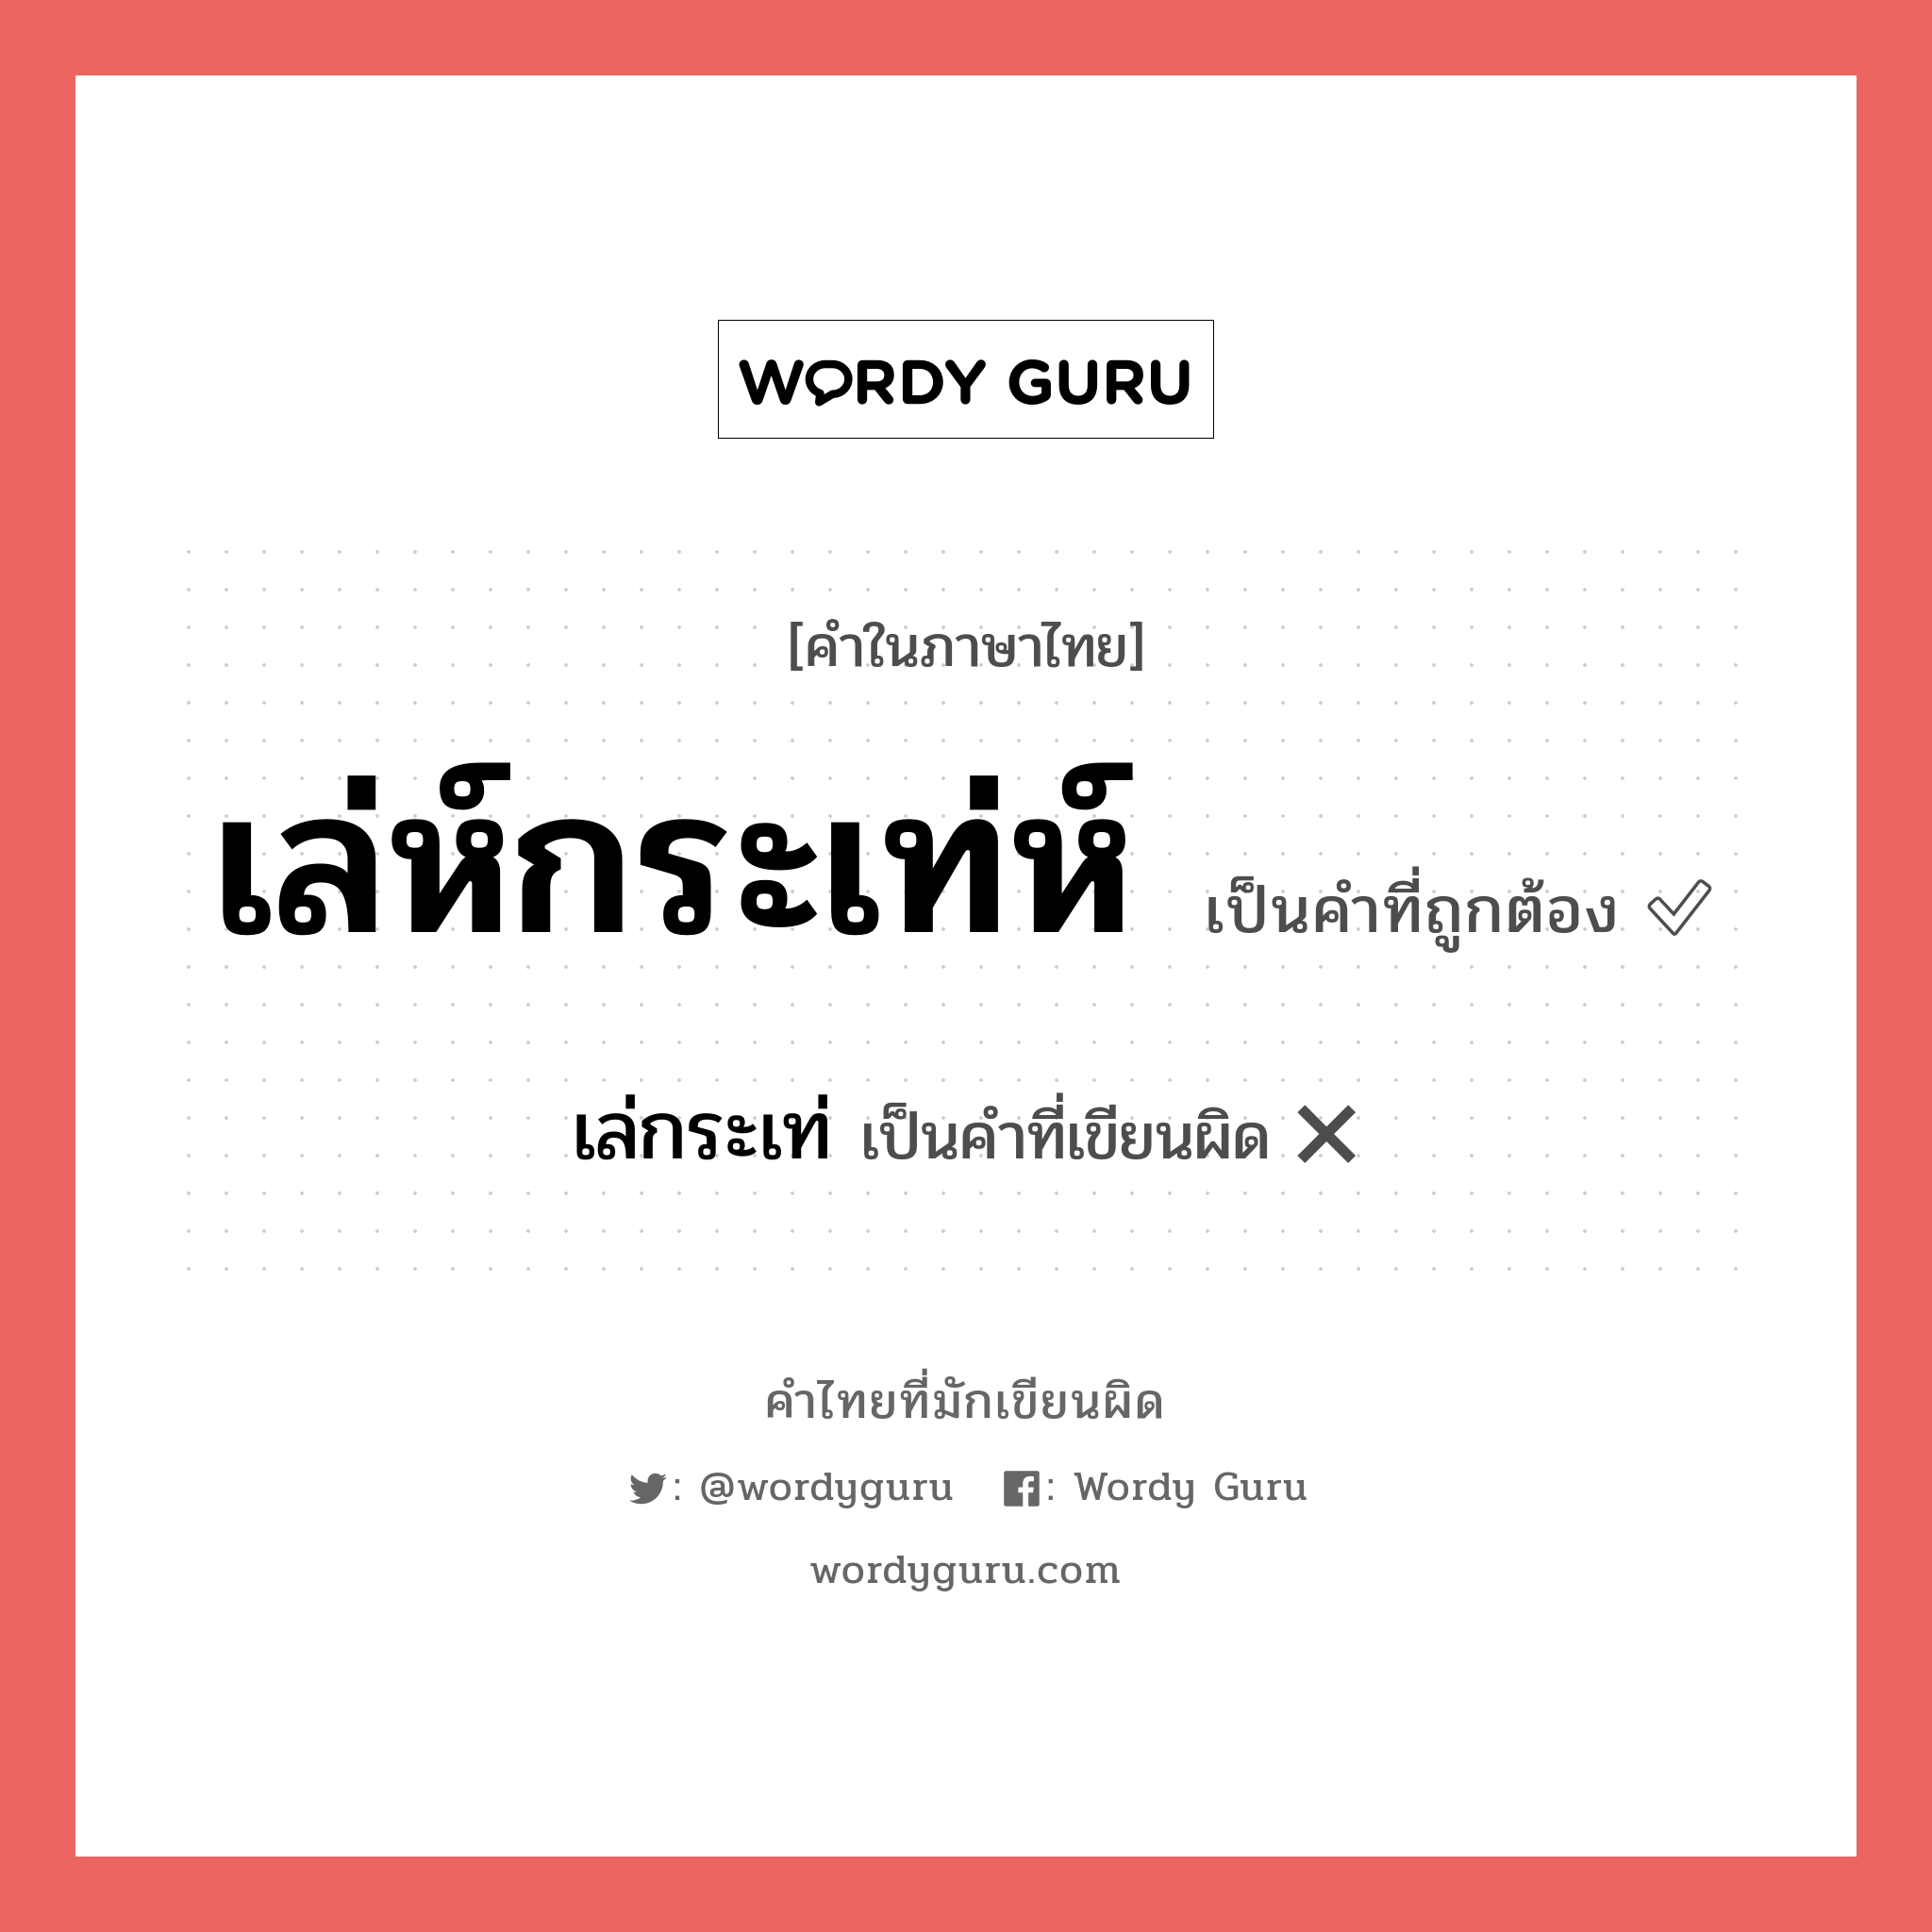 เล่ห์กระเท่ห์ หรือ เล่กระเท่ คำไหนเขียนถูก?, คำในภาษาไทยที่มักเขียนผิด เล่ห์กระเท่ห์ คำที่ผิด ❌ เล่กระเท่